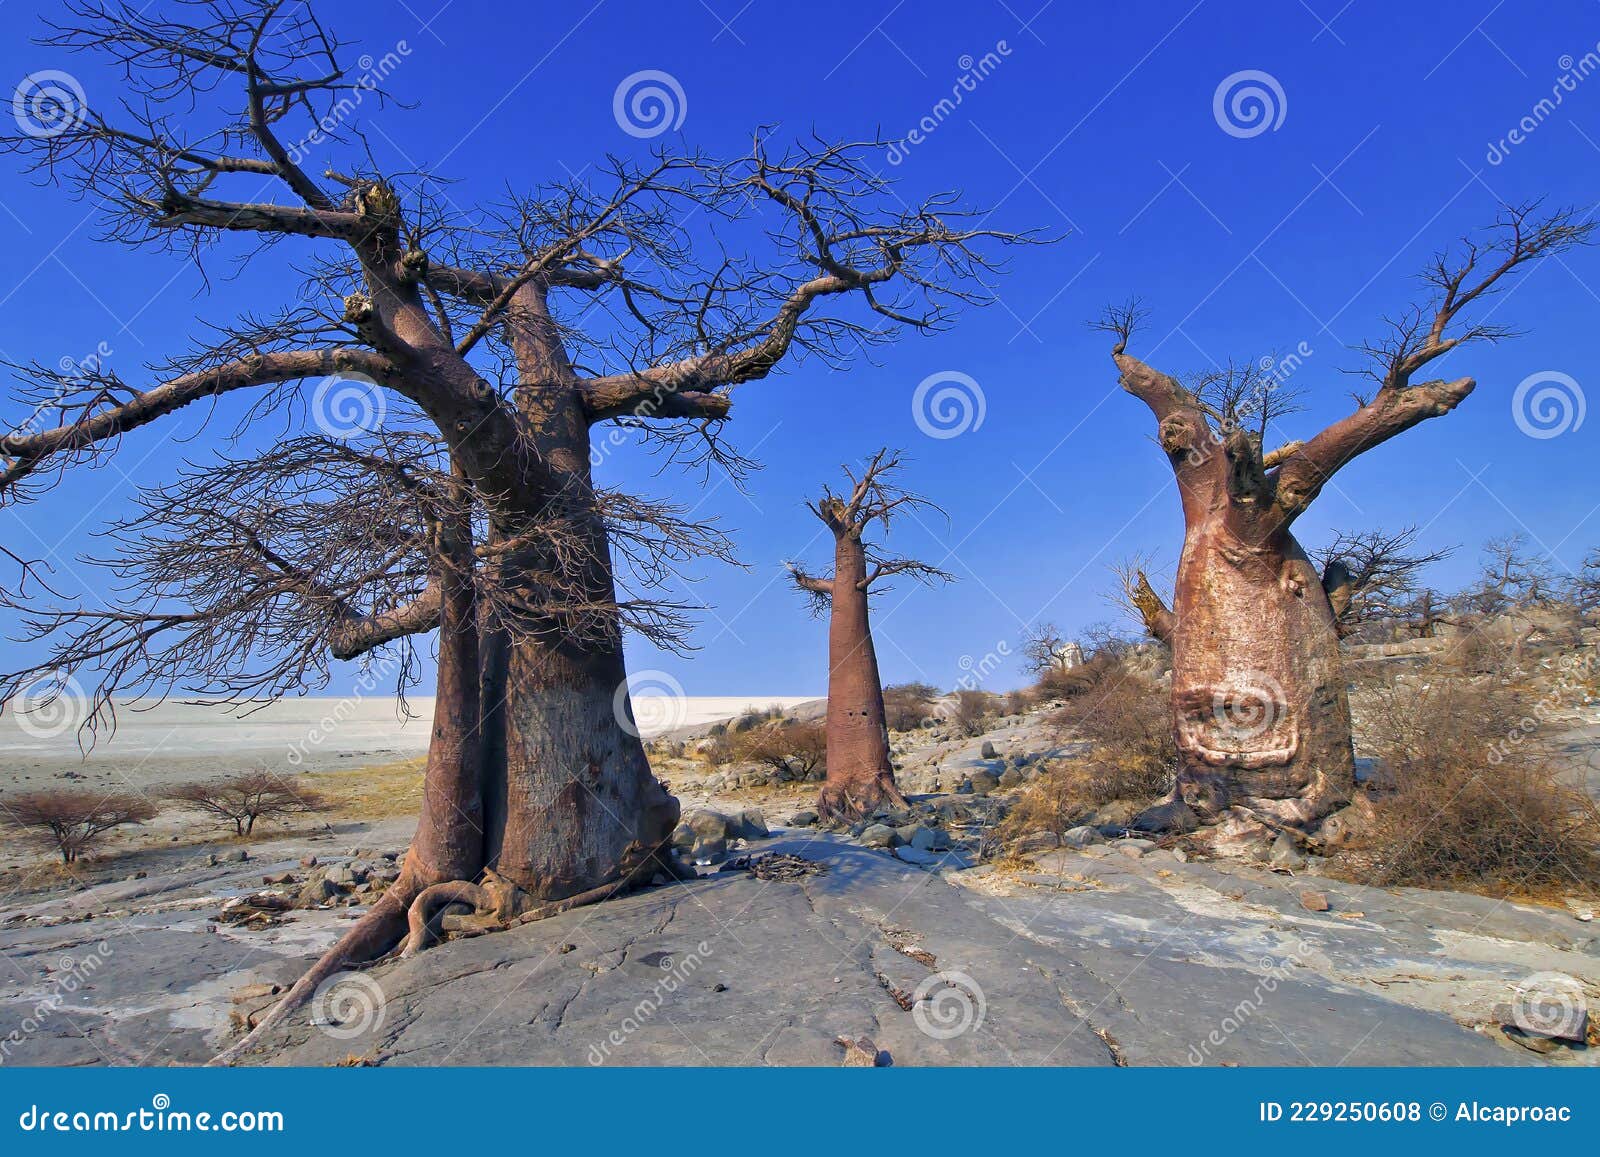 baobab, makgadikgadi pans national park, botswana